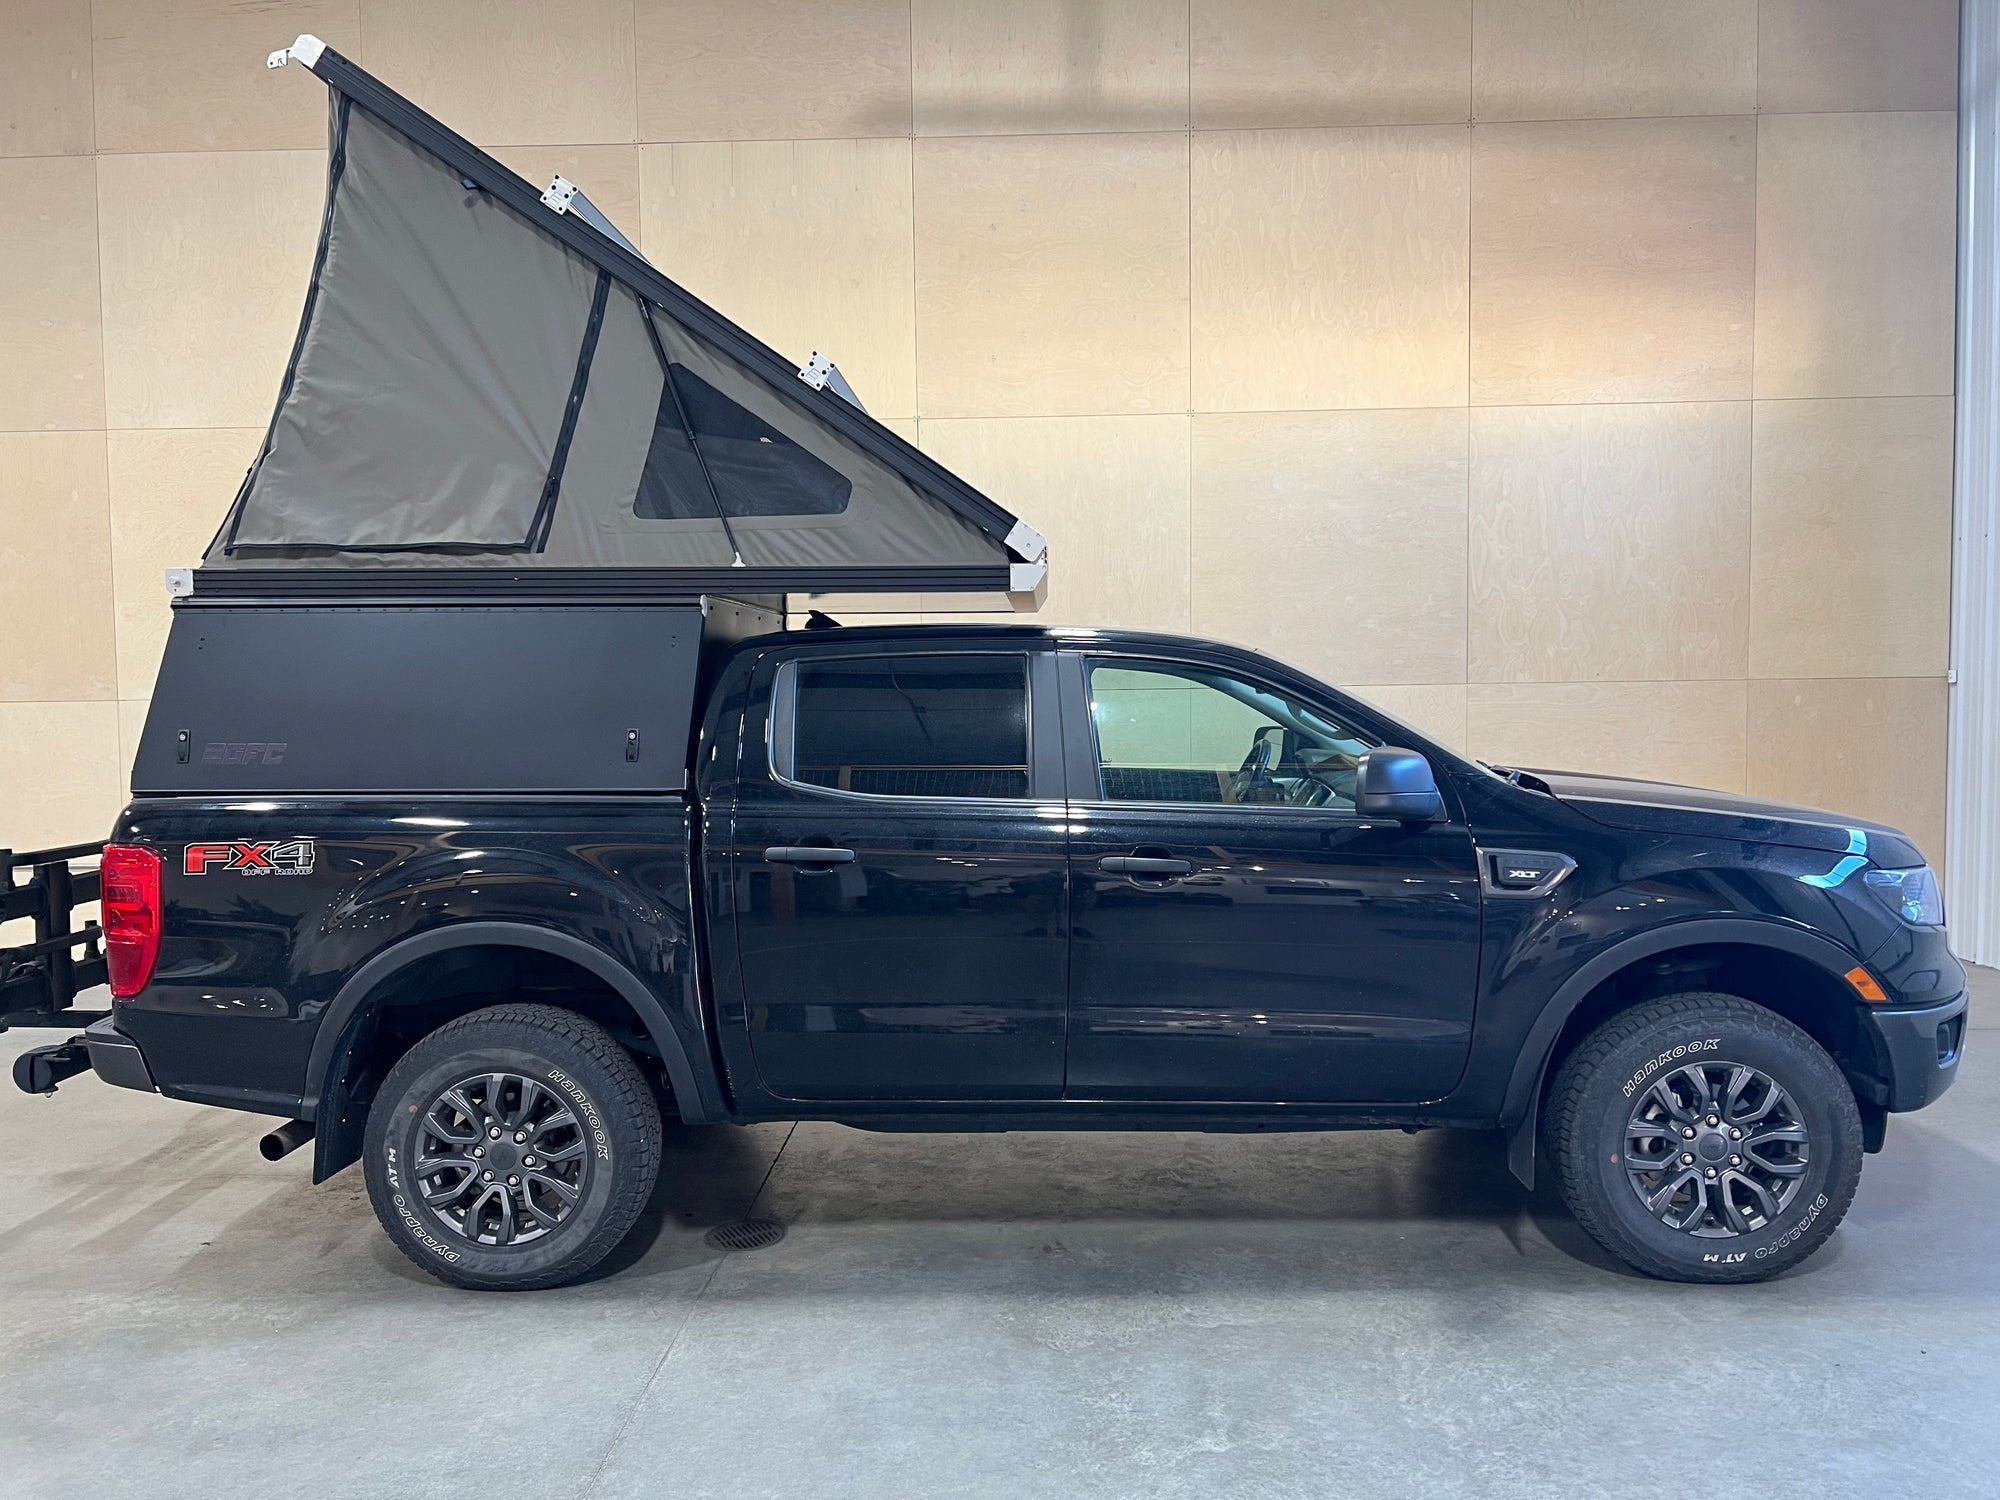 2021 Ford Ranger Camper - Build #4241